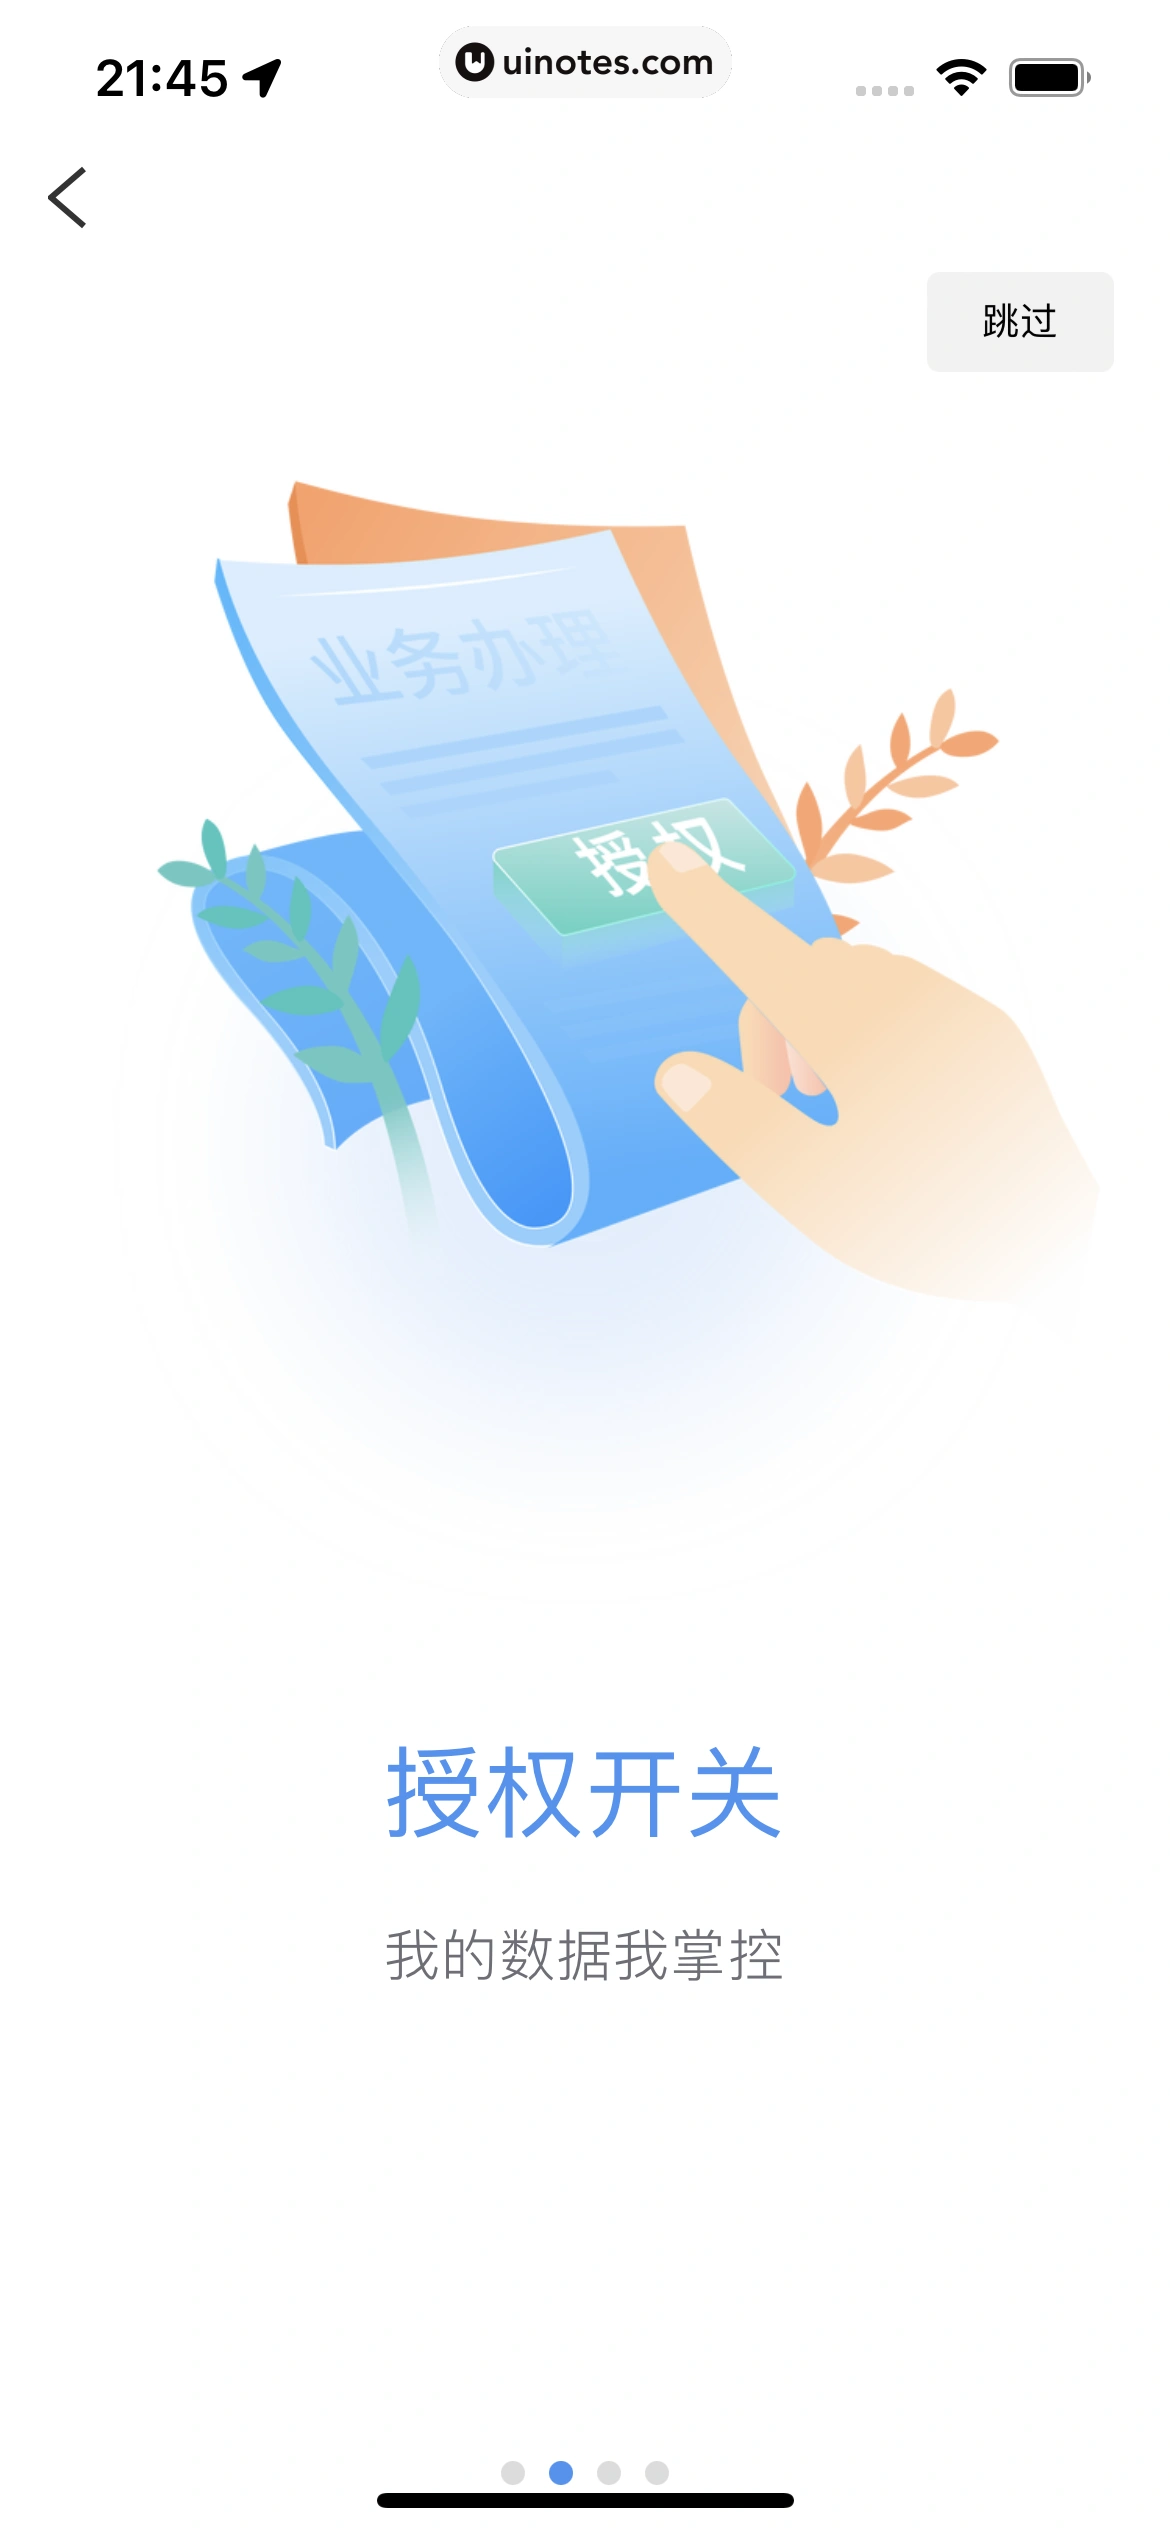 粤省事 App 截图 036 - UI Notes